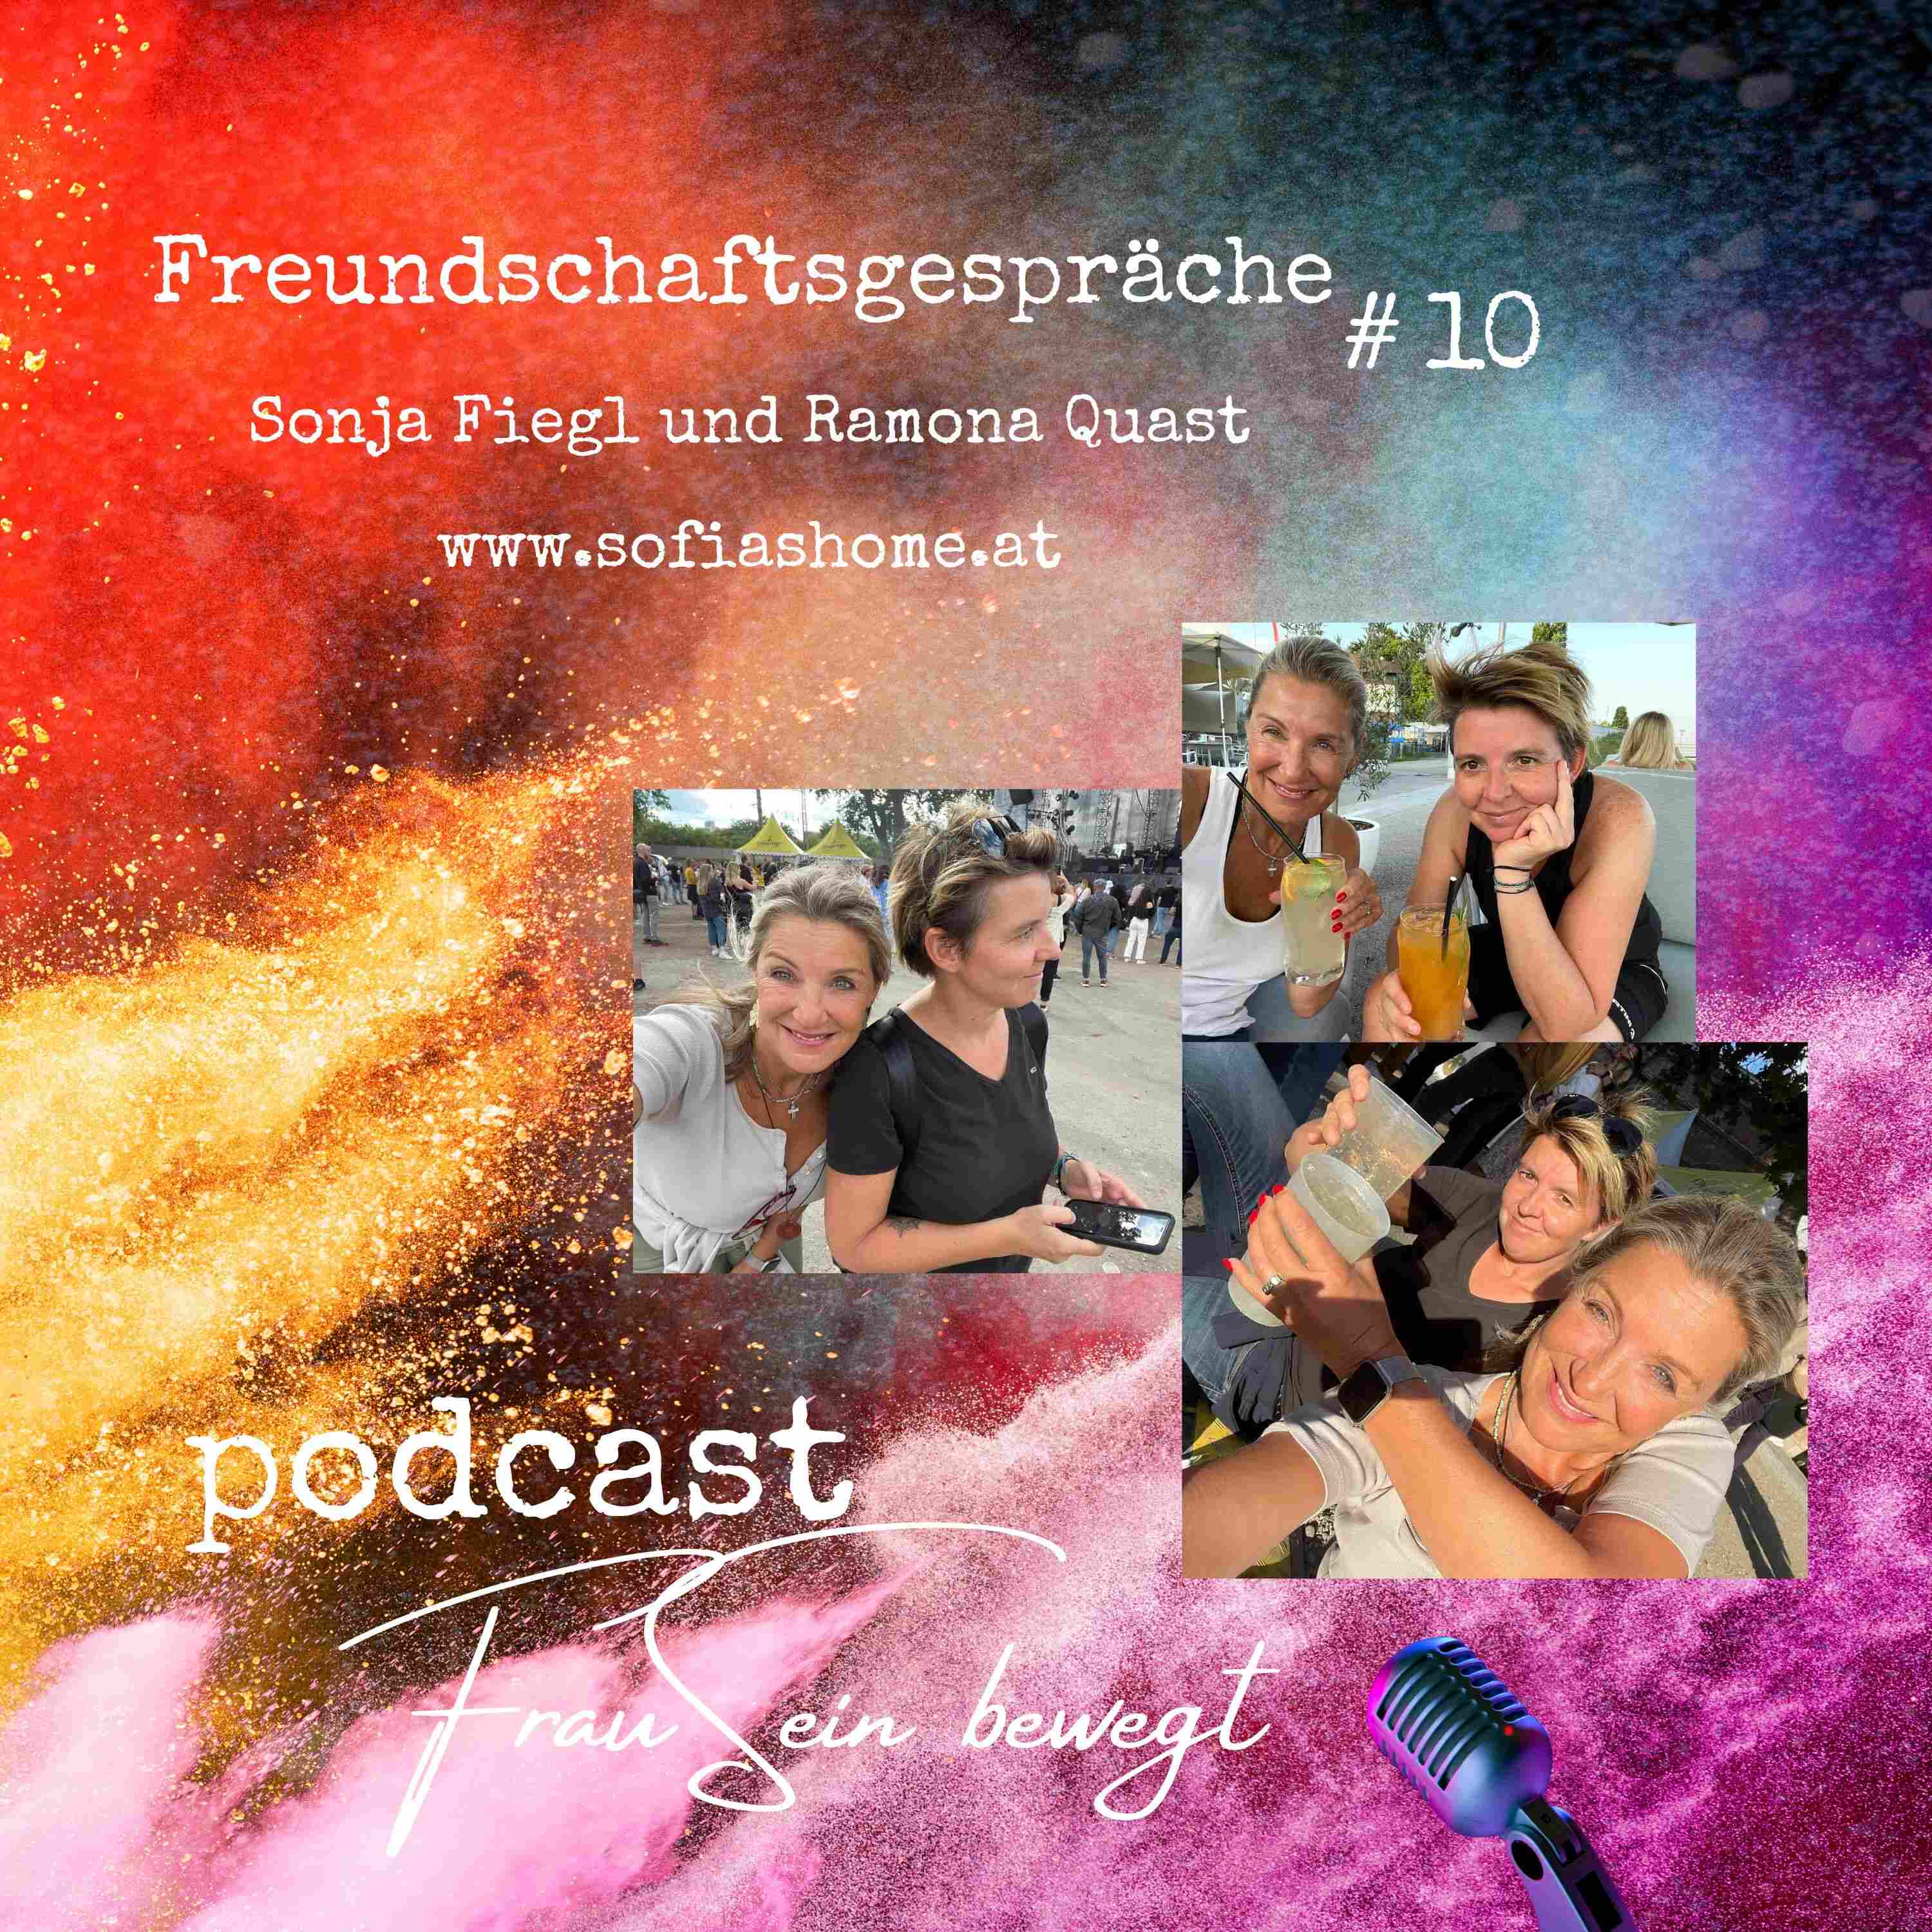 Freundschaftsgespräch Folge 10 - Sonja eine mit Leben FrauSein Fiegl - Quast Ramona - Podcast bewegt Reise 